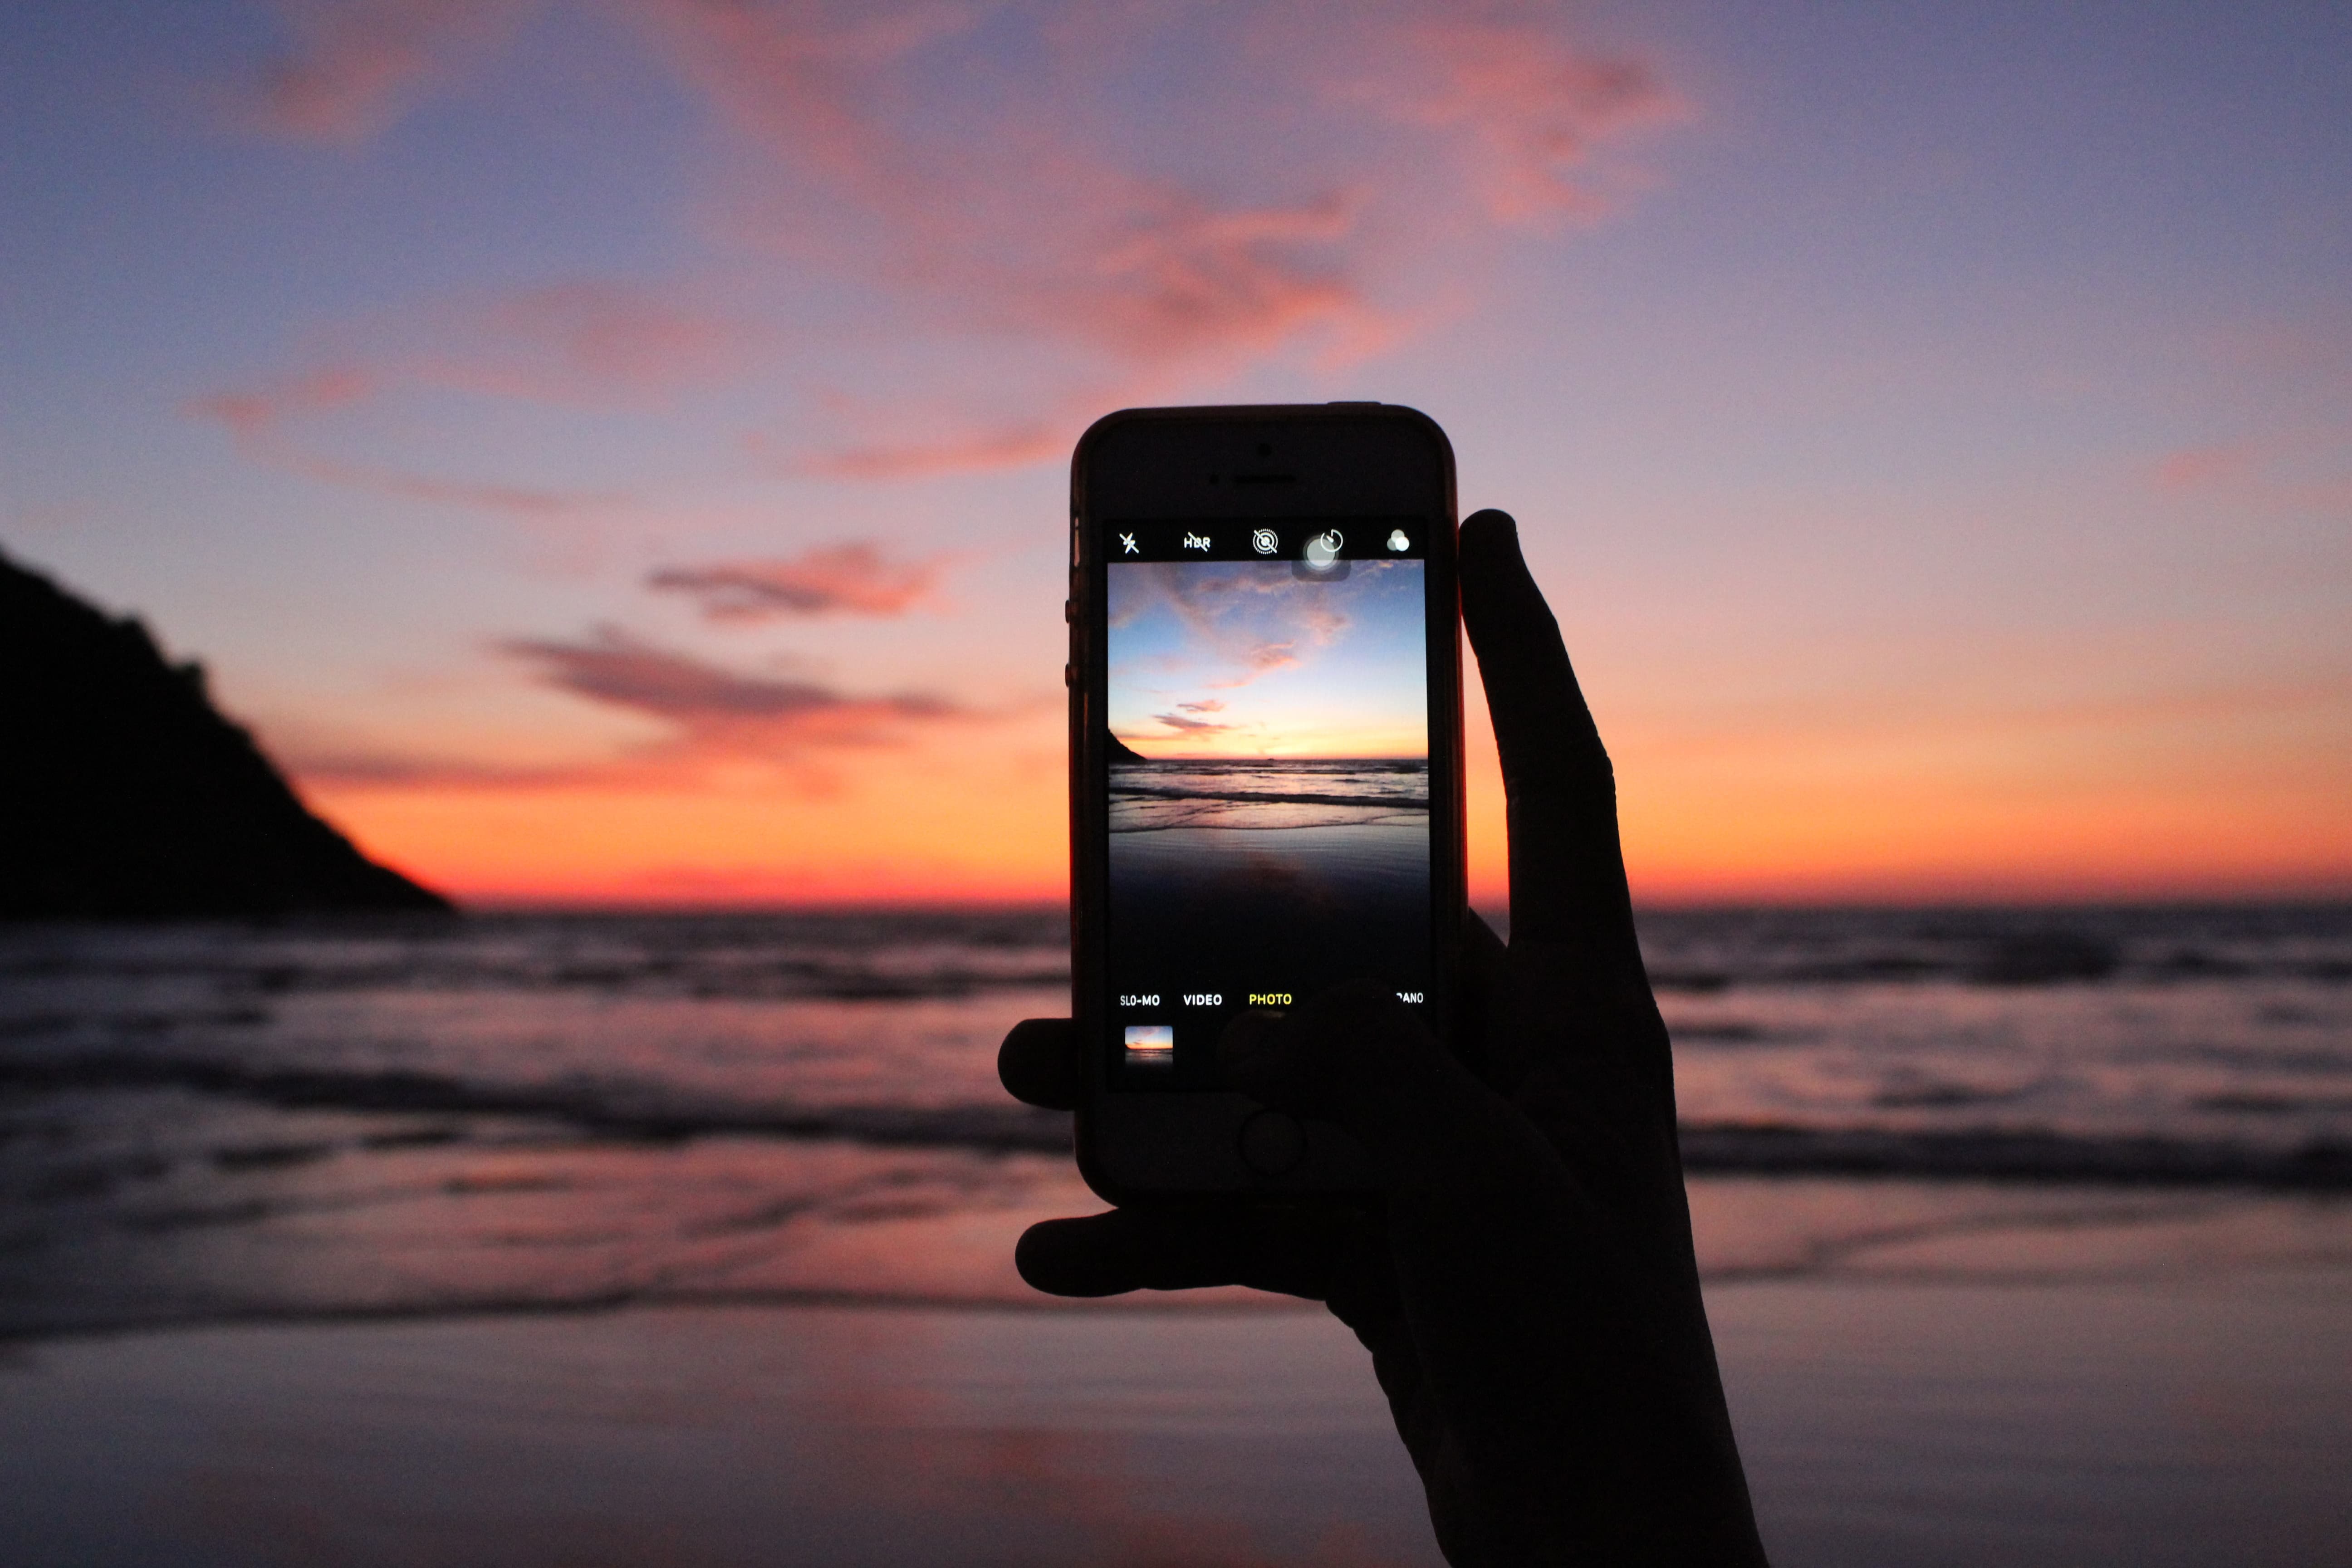 스마트폰으로 바닷가 풍경 사진 촬영하기: 주의할 점과 전문가 팁 공개